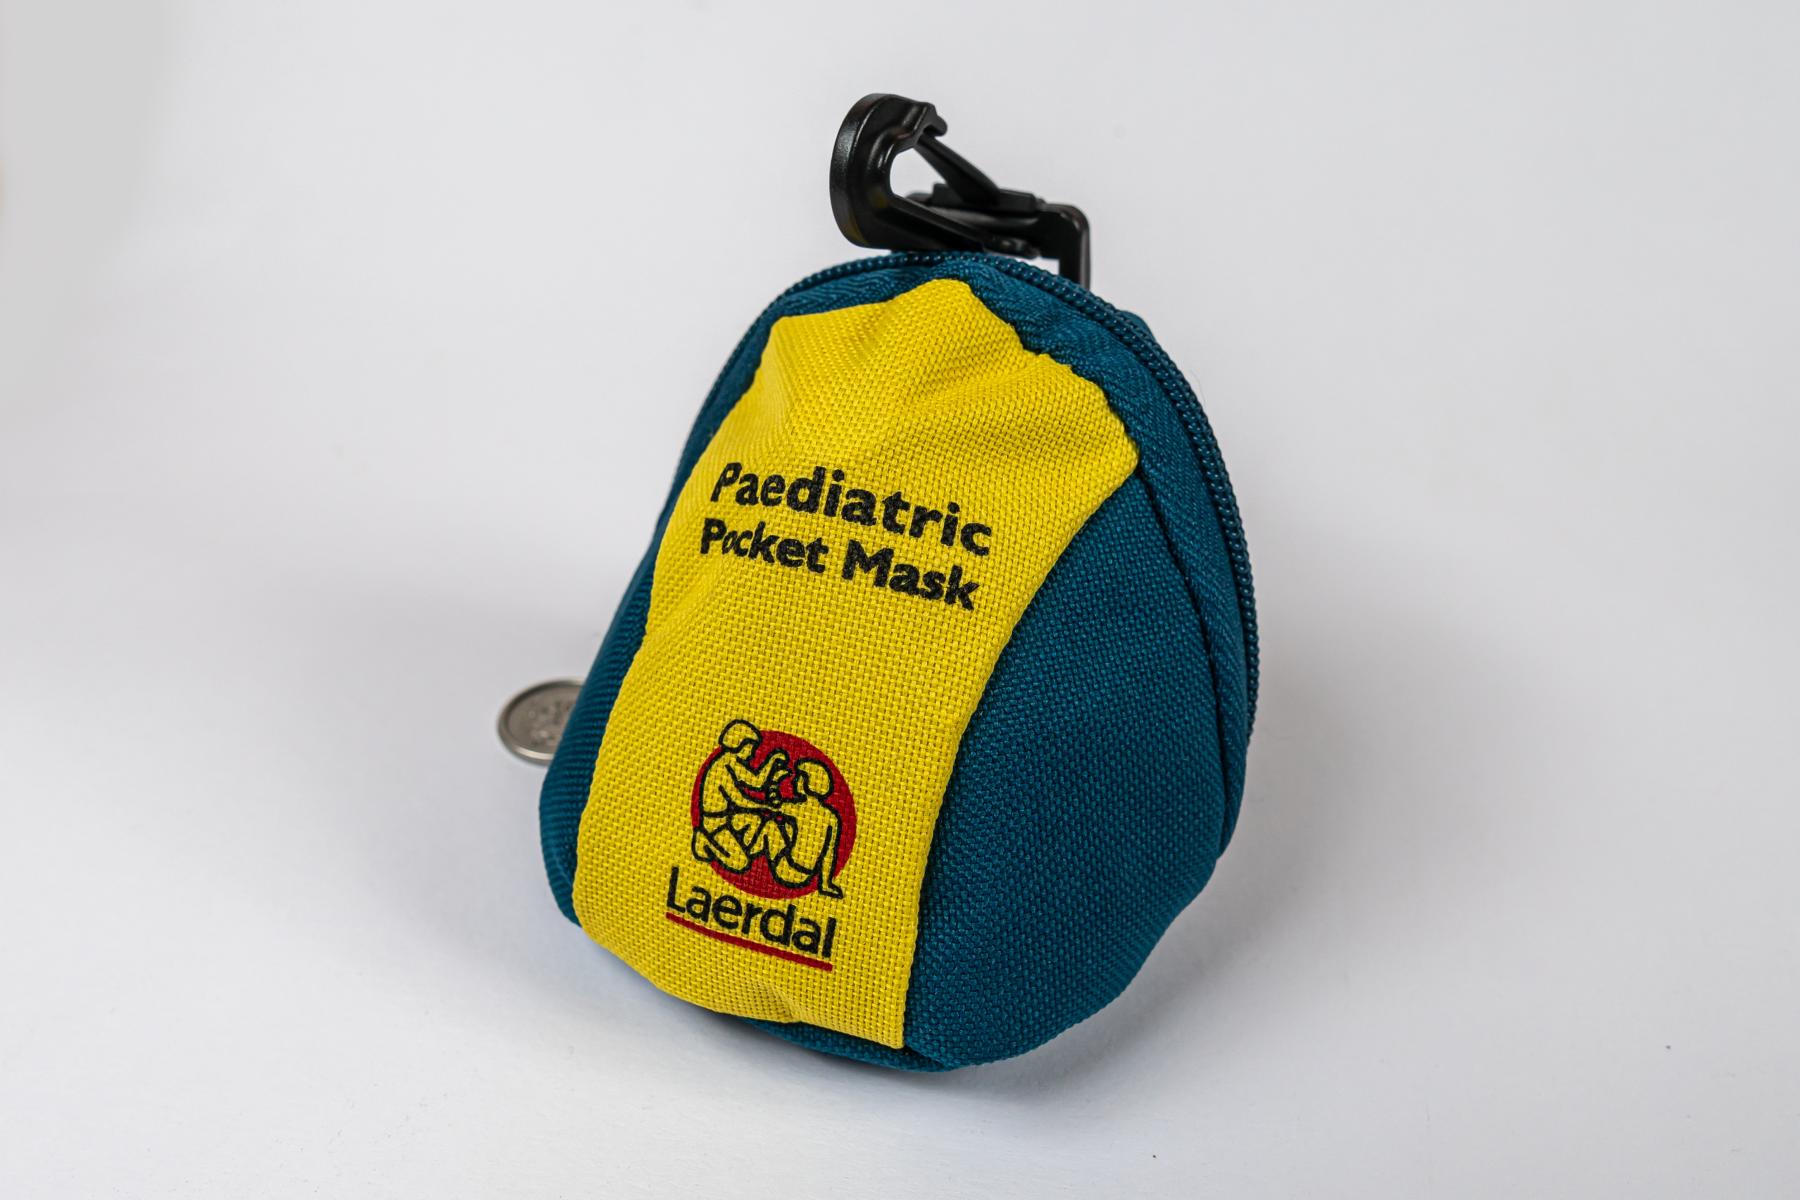 Kinder Beatmungsmaske Laerdal (Taschenmaske) – Medlife